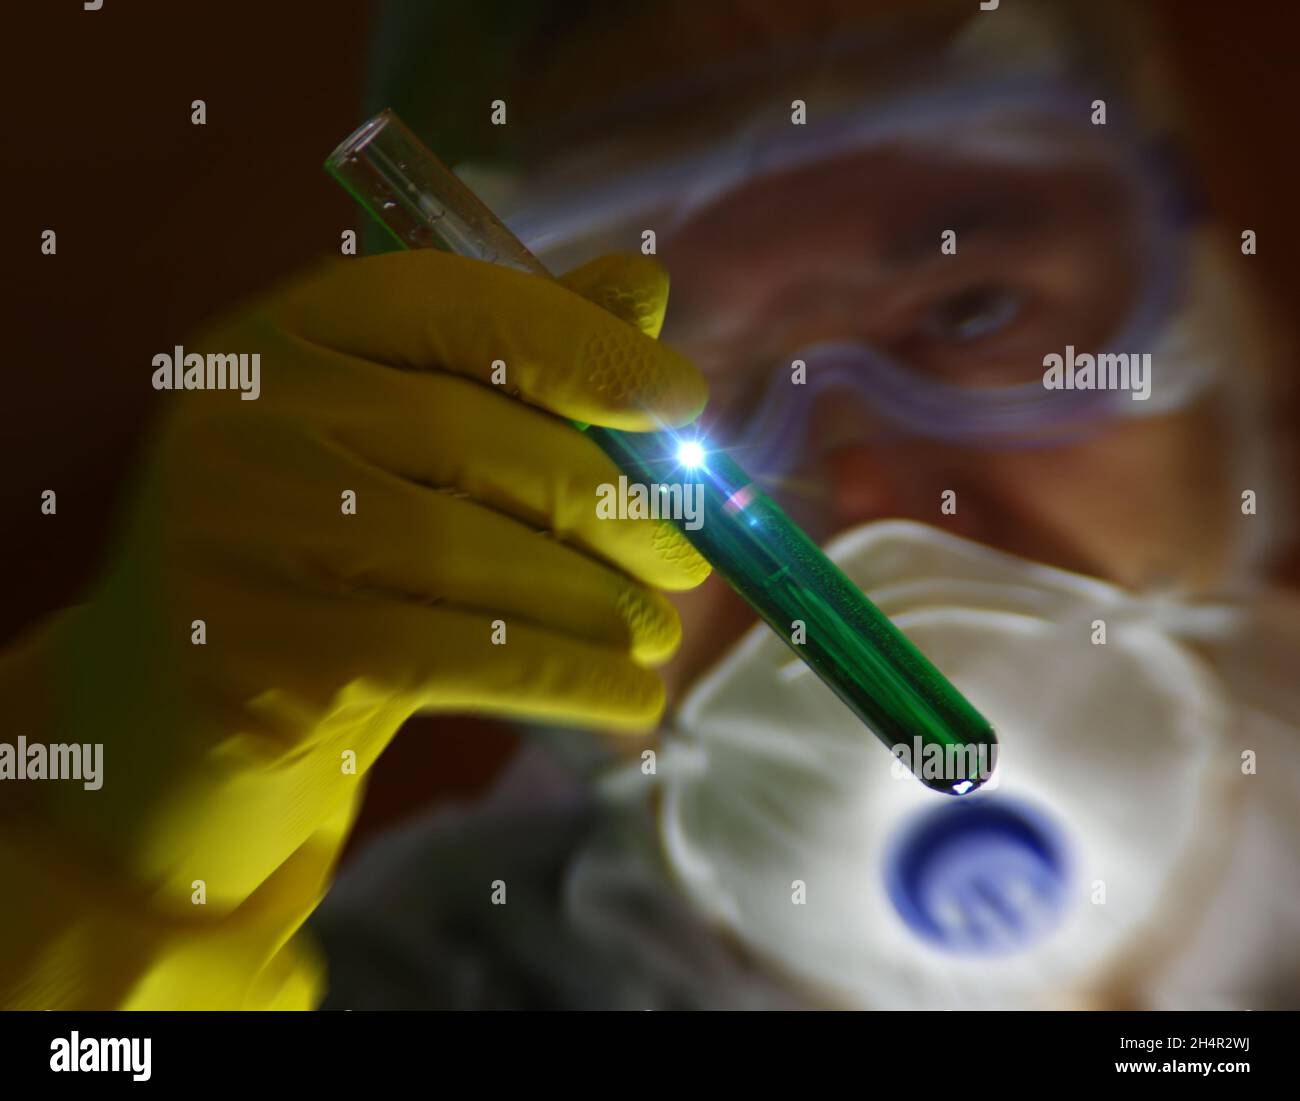 Un scientifique avec un tube à essai dans sa main travaille sur une nouvelle substance.Concept de pharmacie, recherche, biochimie, microbiologie, médecine,science, Banque D'Images